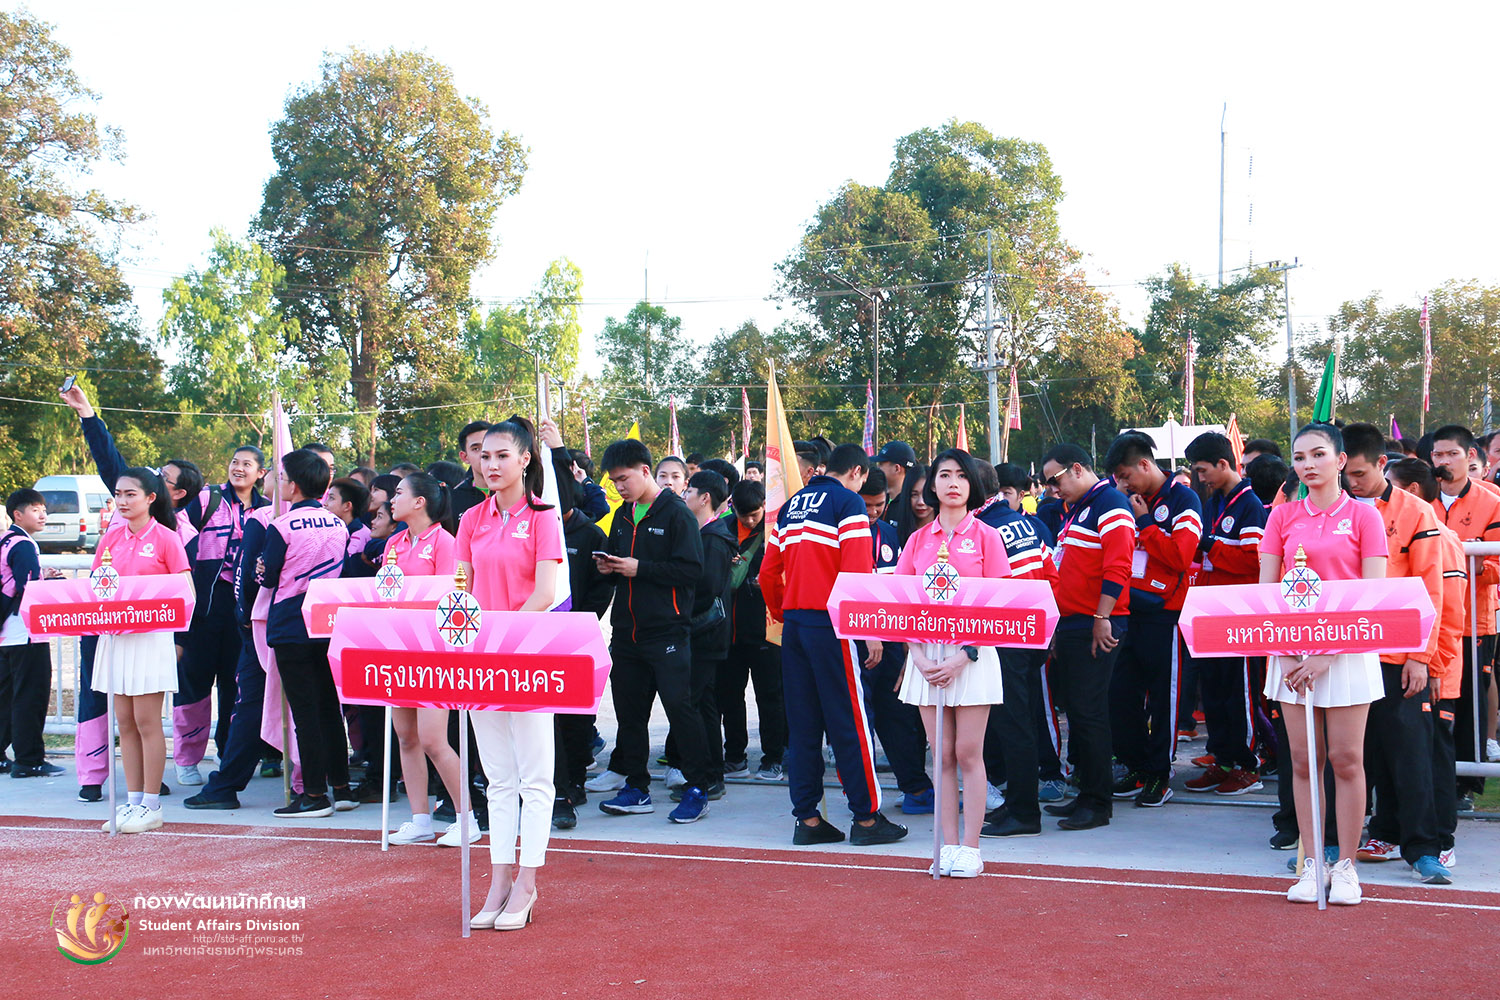 11 - 20 มกราคม 2562 บรรยากาศการเข้าร่วมการแข่งขันกีฬามหาวิทยาลัยแห่งประเทศไทย ราชภัฏอุบลราชธานีเกมส์ ครั้งที่  46  ณ มหาวิทยาลัยราชภัฏอุบลราชธานี